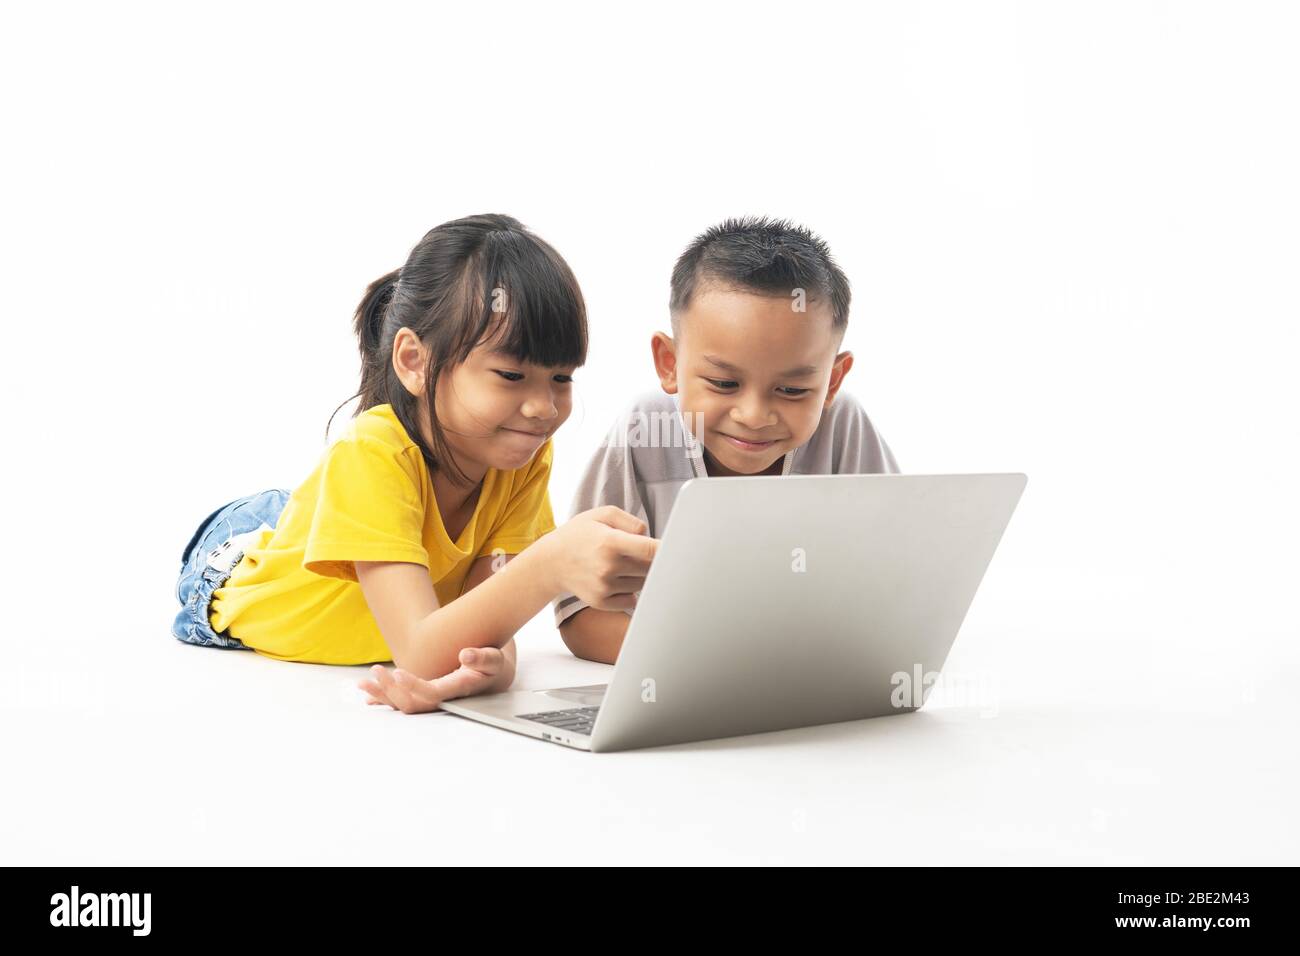 Jeunes enfants, garçons et filles thaïlandais asiatiques pontant et regardant sur ordinateur portable pour apprendre par la technologie et multimédia, isolé et blanc fond Banque D'Images